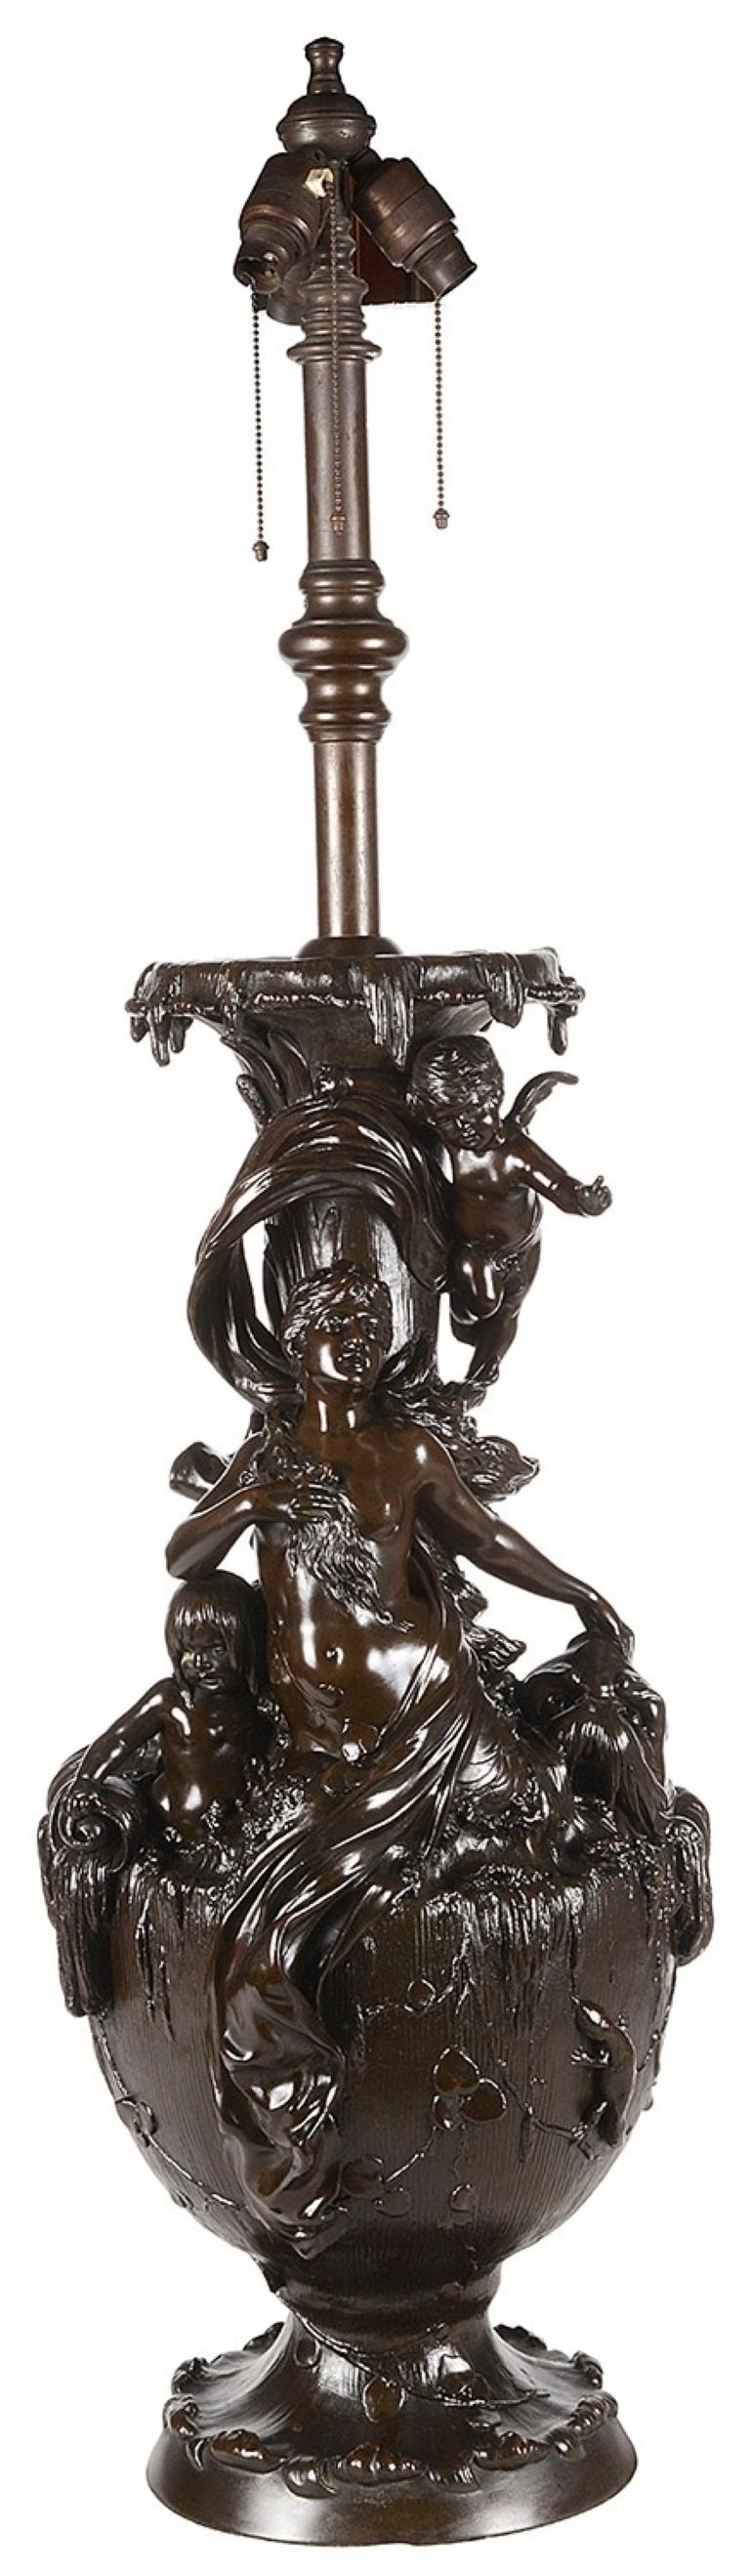 Magnifique vase en spelt bronzé du XIXe siècle représentant la déesse de la mer Amphitrite, de la Grèce antique, avec un oursin et des chérubins autour d'elle.